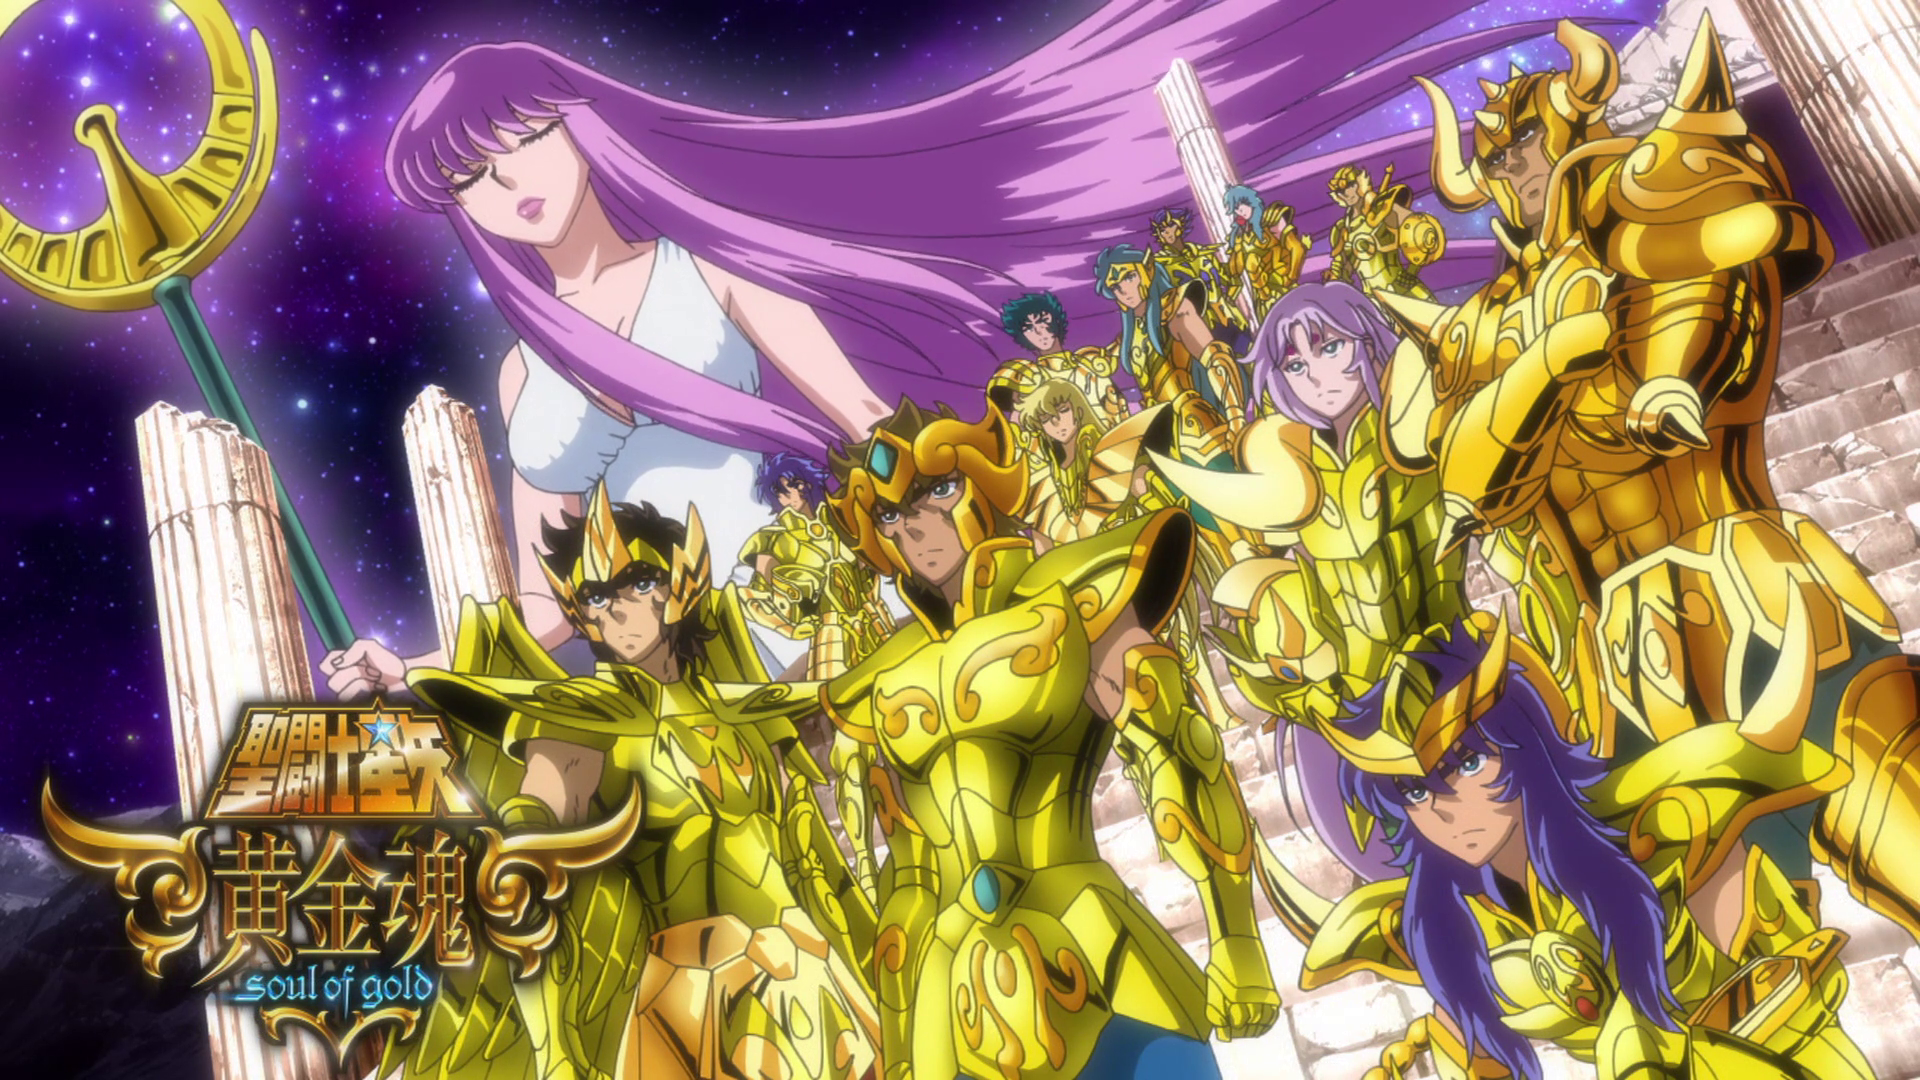 Saint Seiya Omega Episode 29 & 30 Review - A Better, Golden